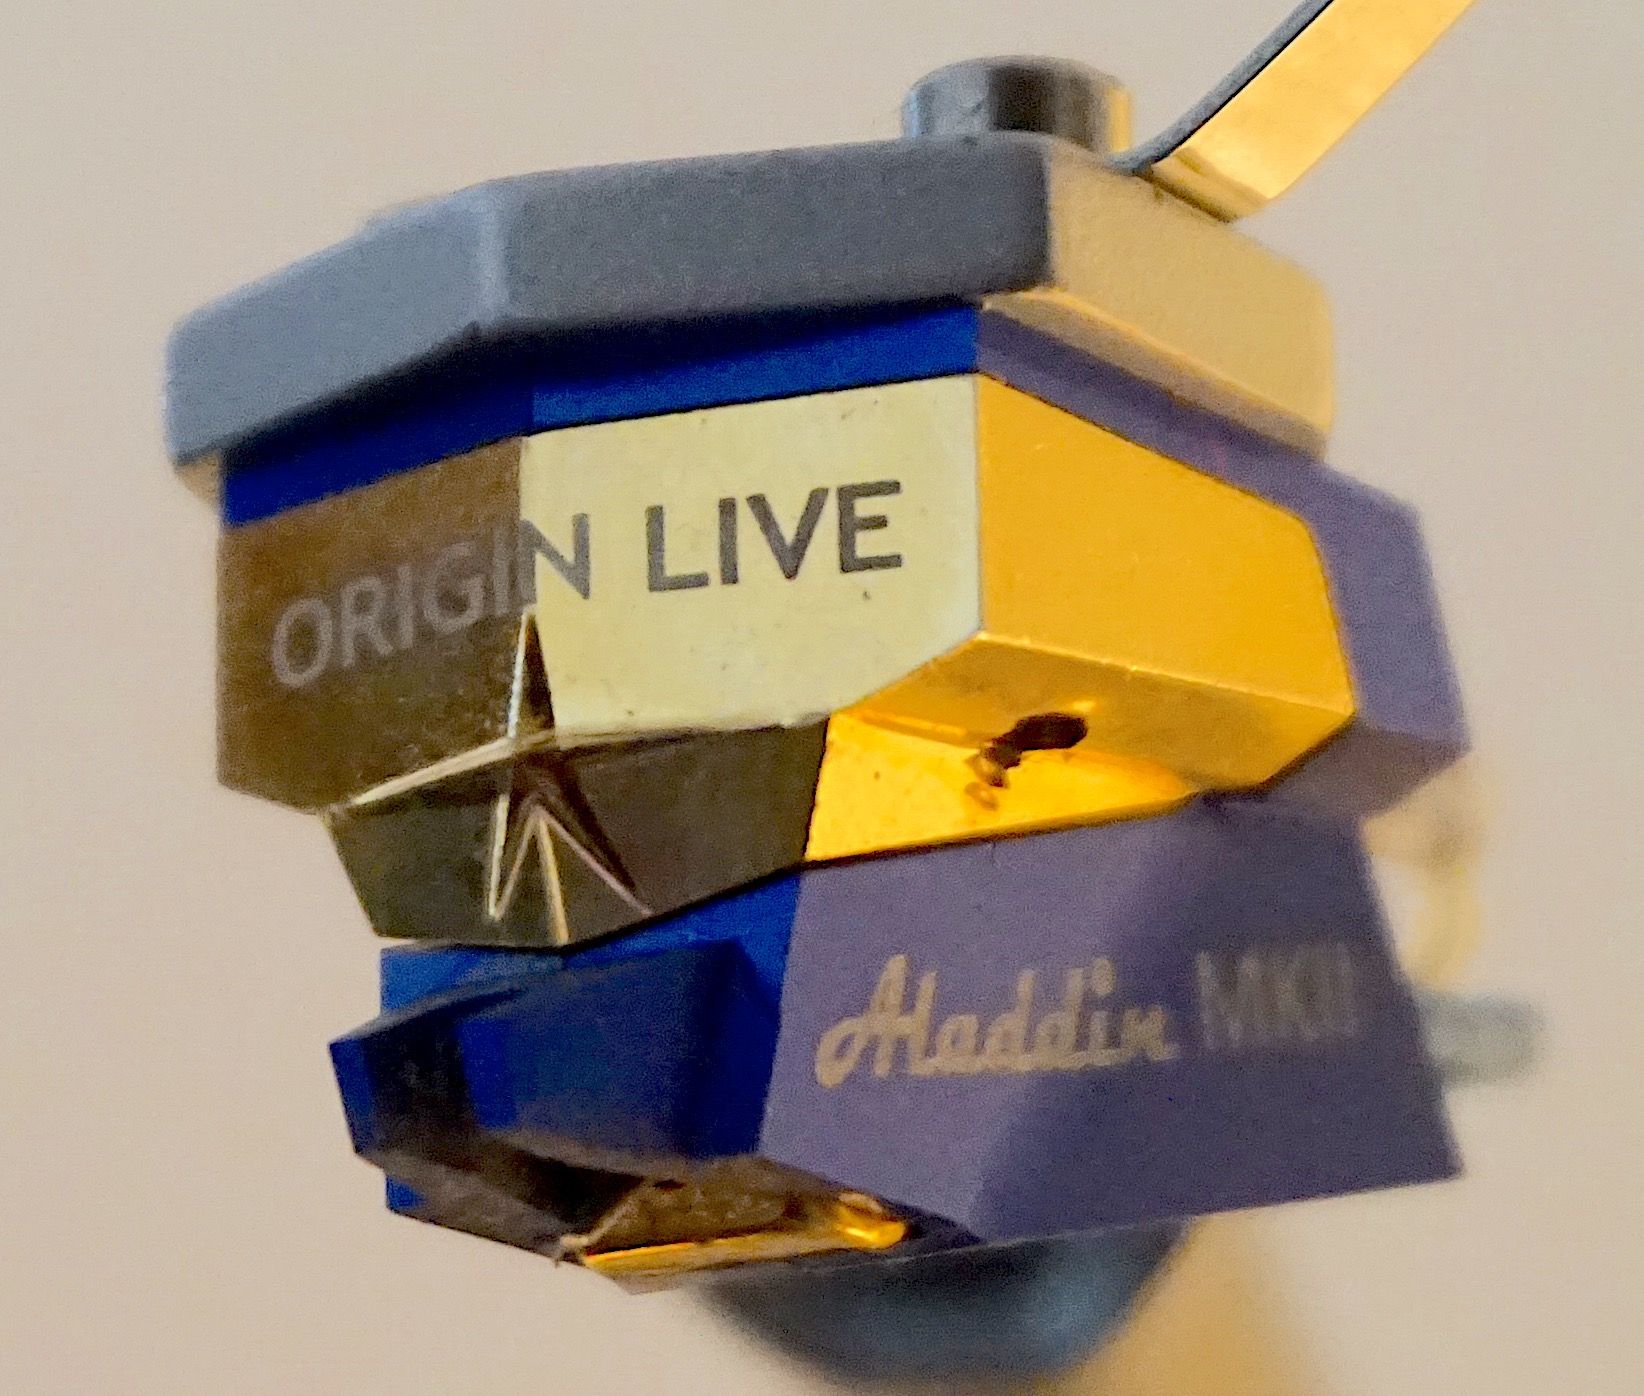 Aladdin Mk.2 Cartridge from Origin Live